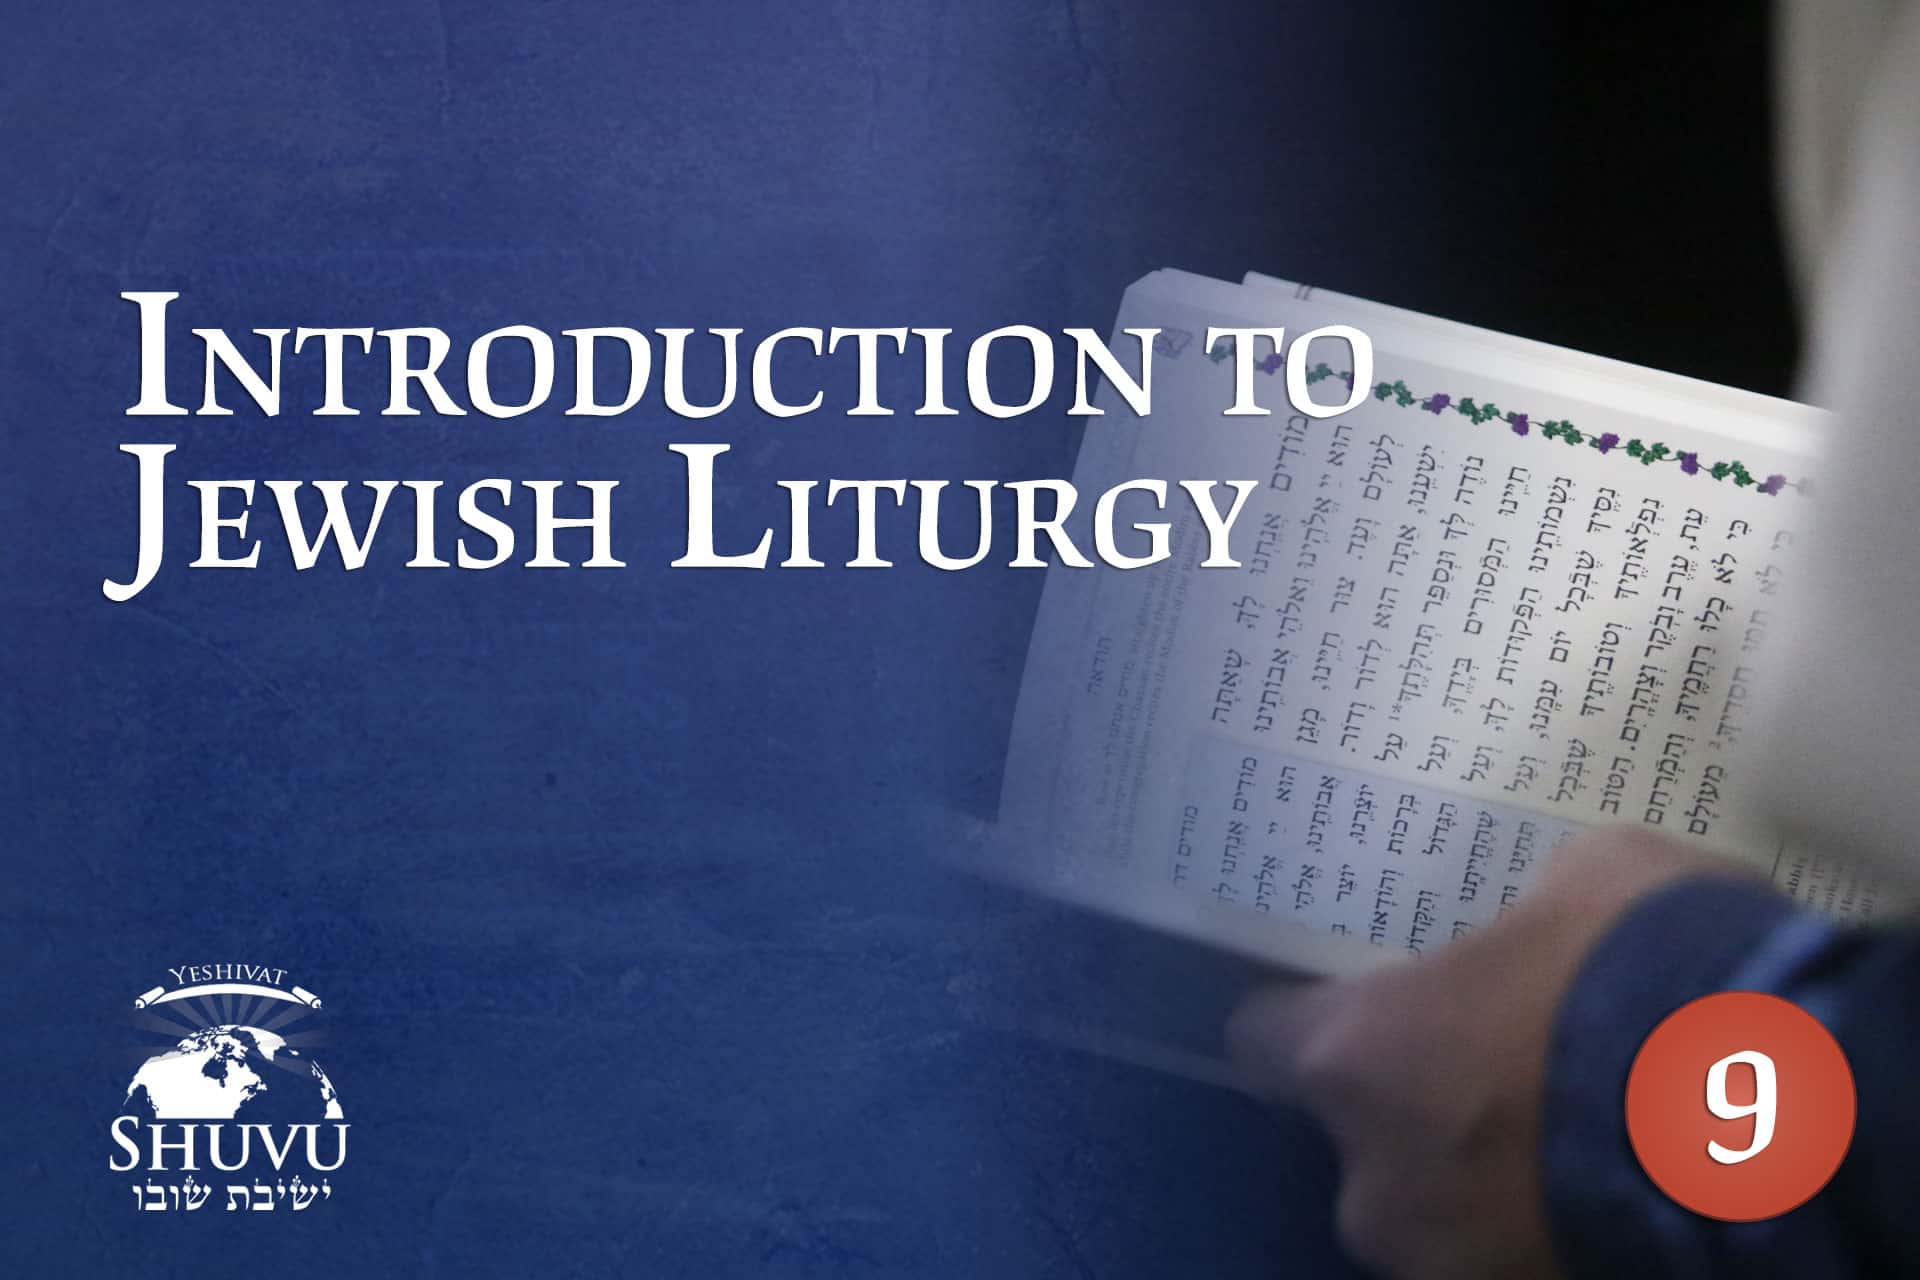 09_cover_yeshivat_shuvu_jewish_liturgy_ENG_new